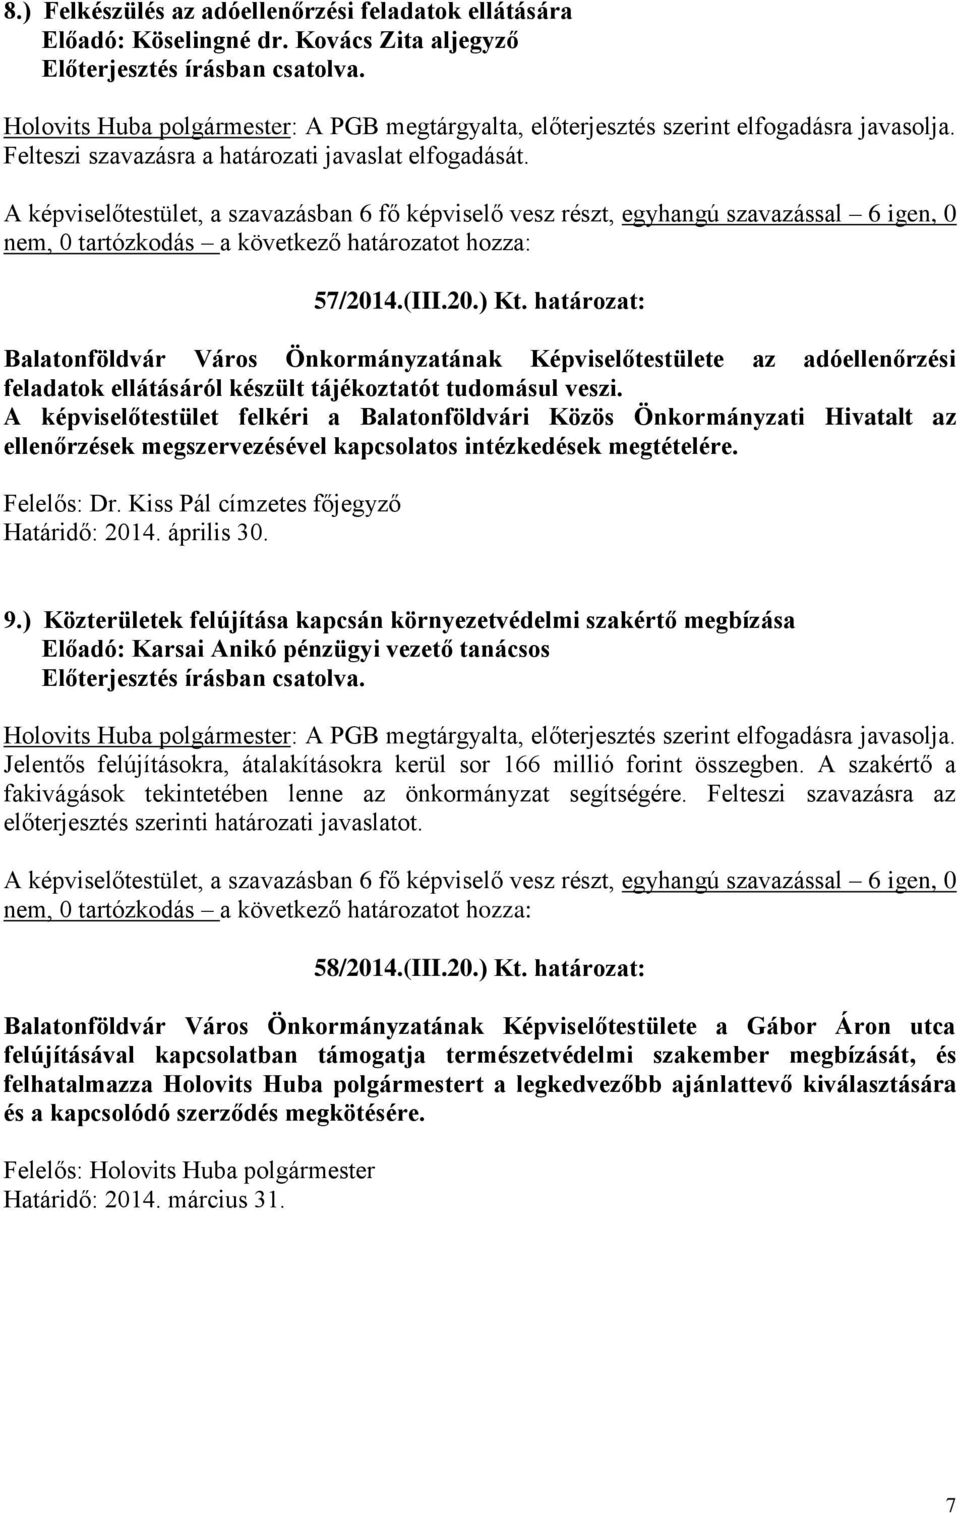 A képviselőtestület felkéri a Balatonföldvári Közös Önkormányzati Hivatalt az ellenőrzések megszervezésével kapcsolatos intézkedések megtételére. Felelős: Dr.